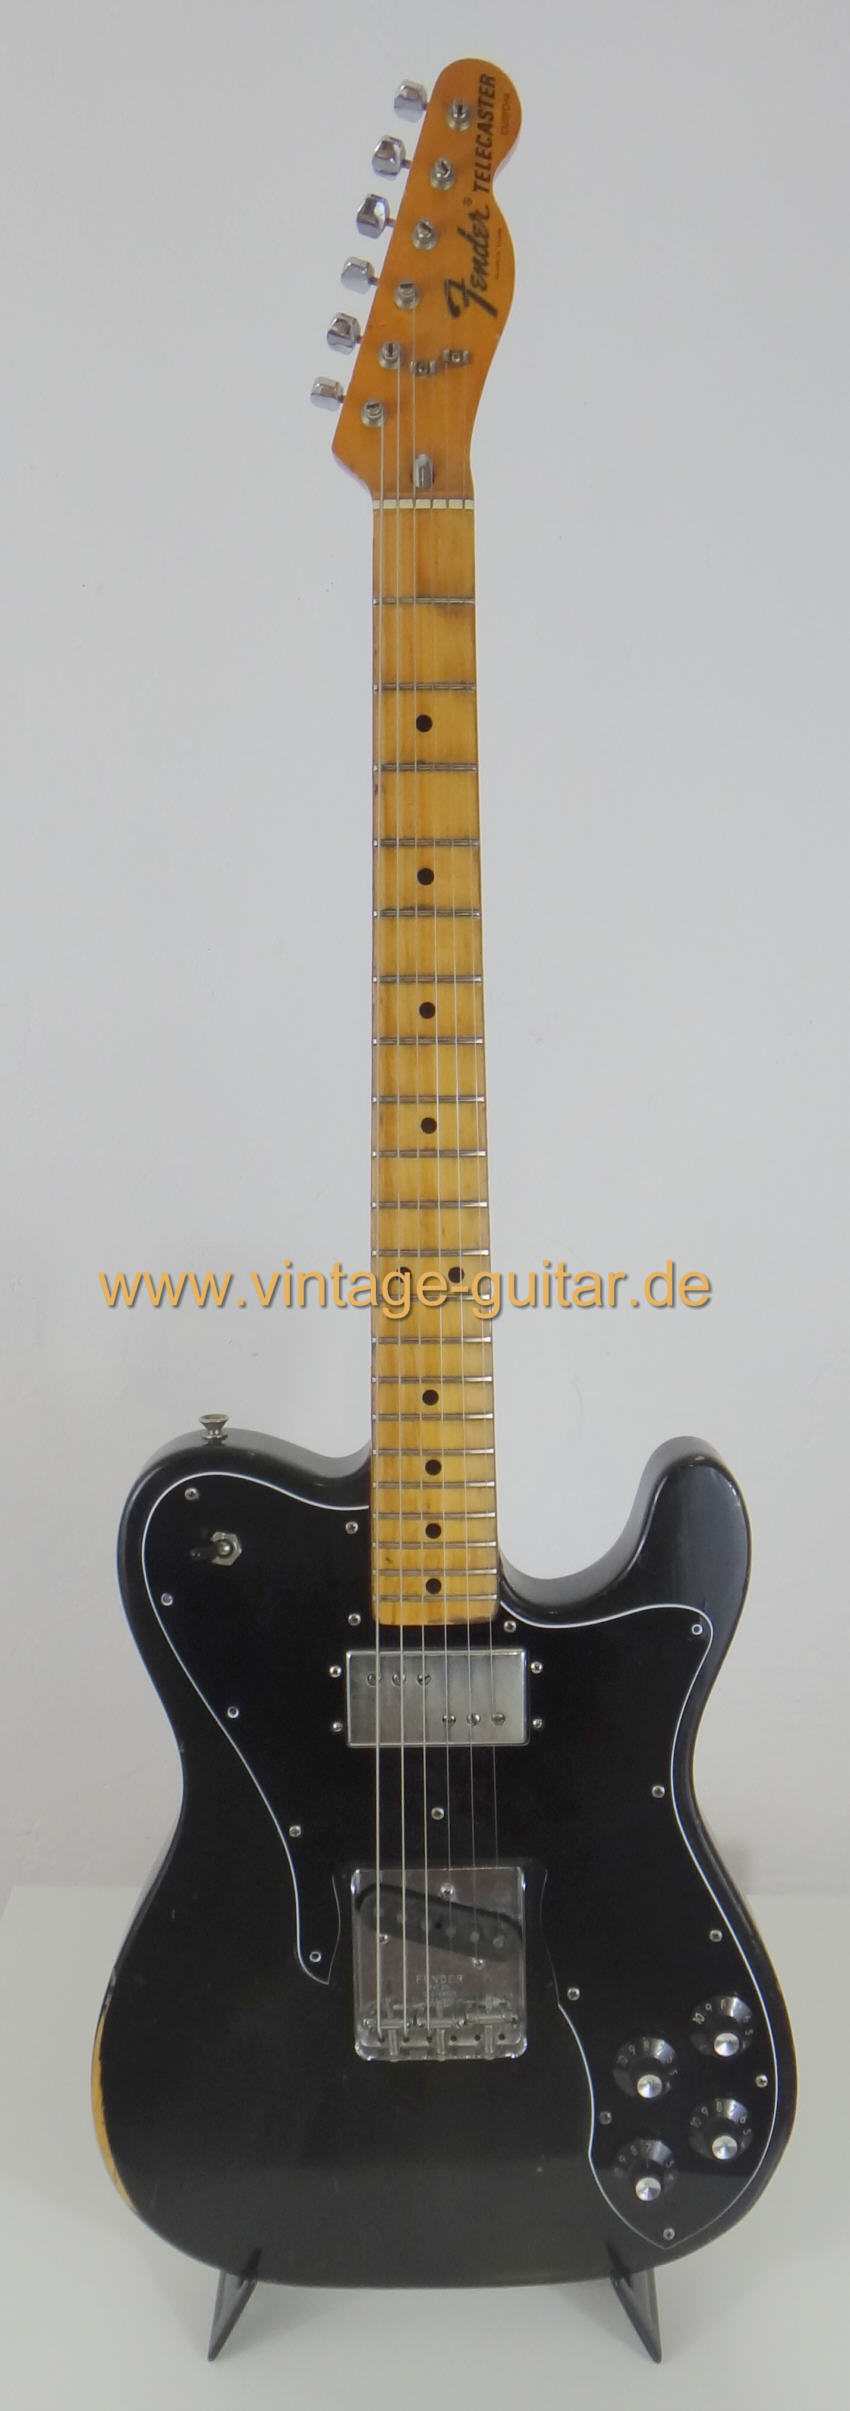 Fender-Telecaster-Custom-1974-black-a.jpg